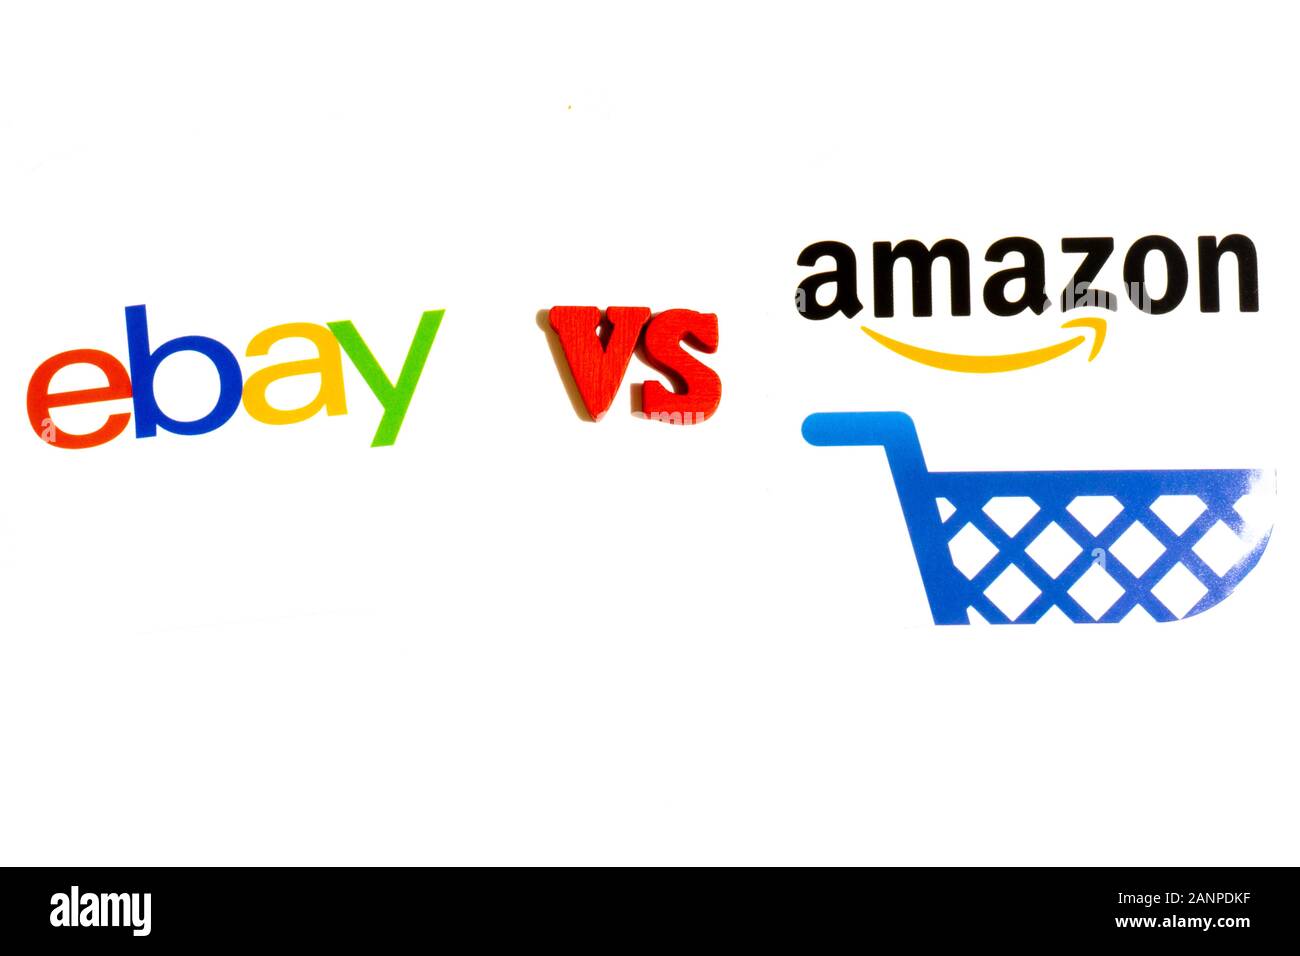 Los Angeles, Californie, États-Unis - 17 janvier 2020: EBay contre Amazon concept de comparaison, éditorial illustratif Banque D'Images